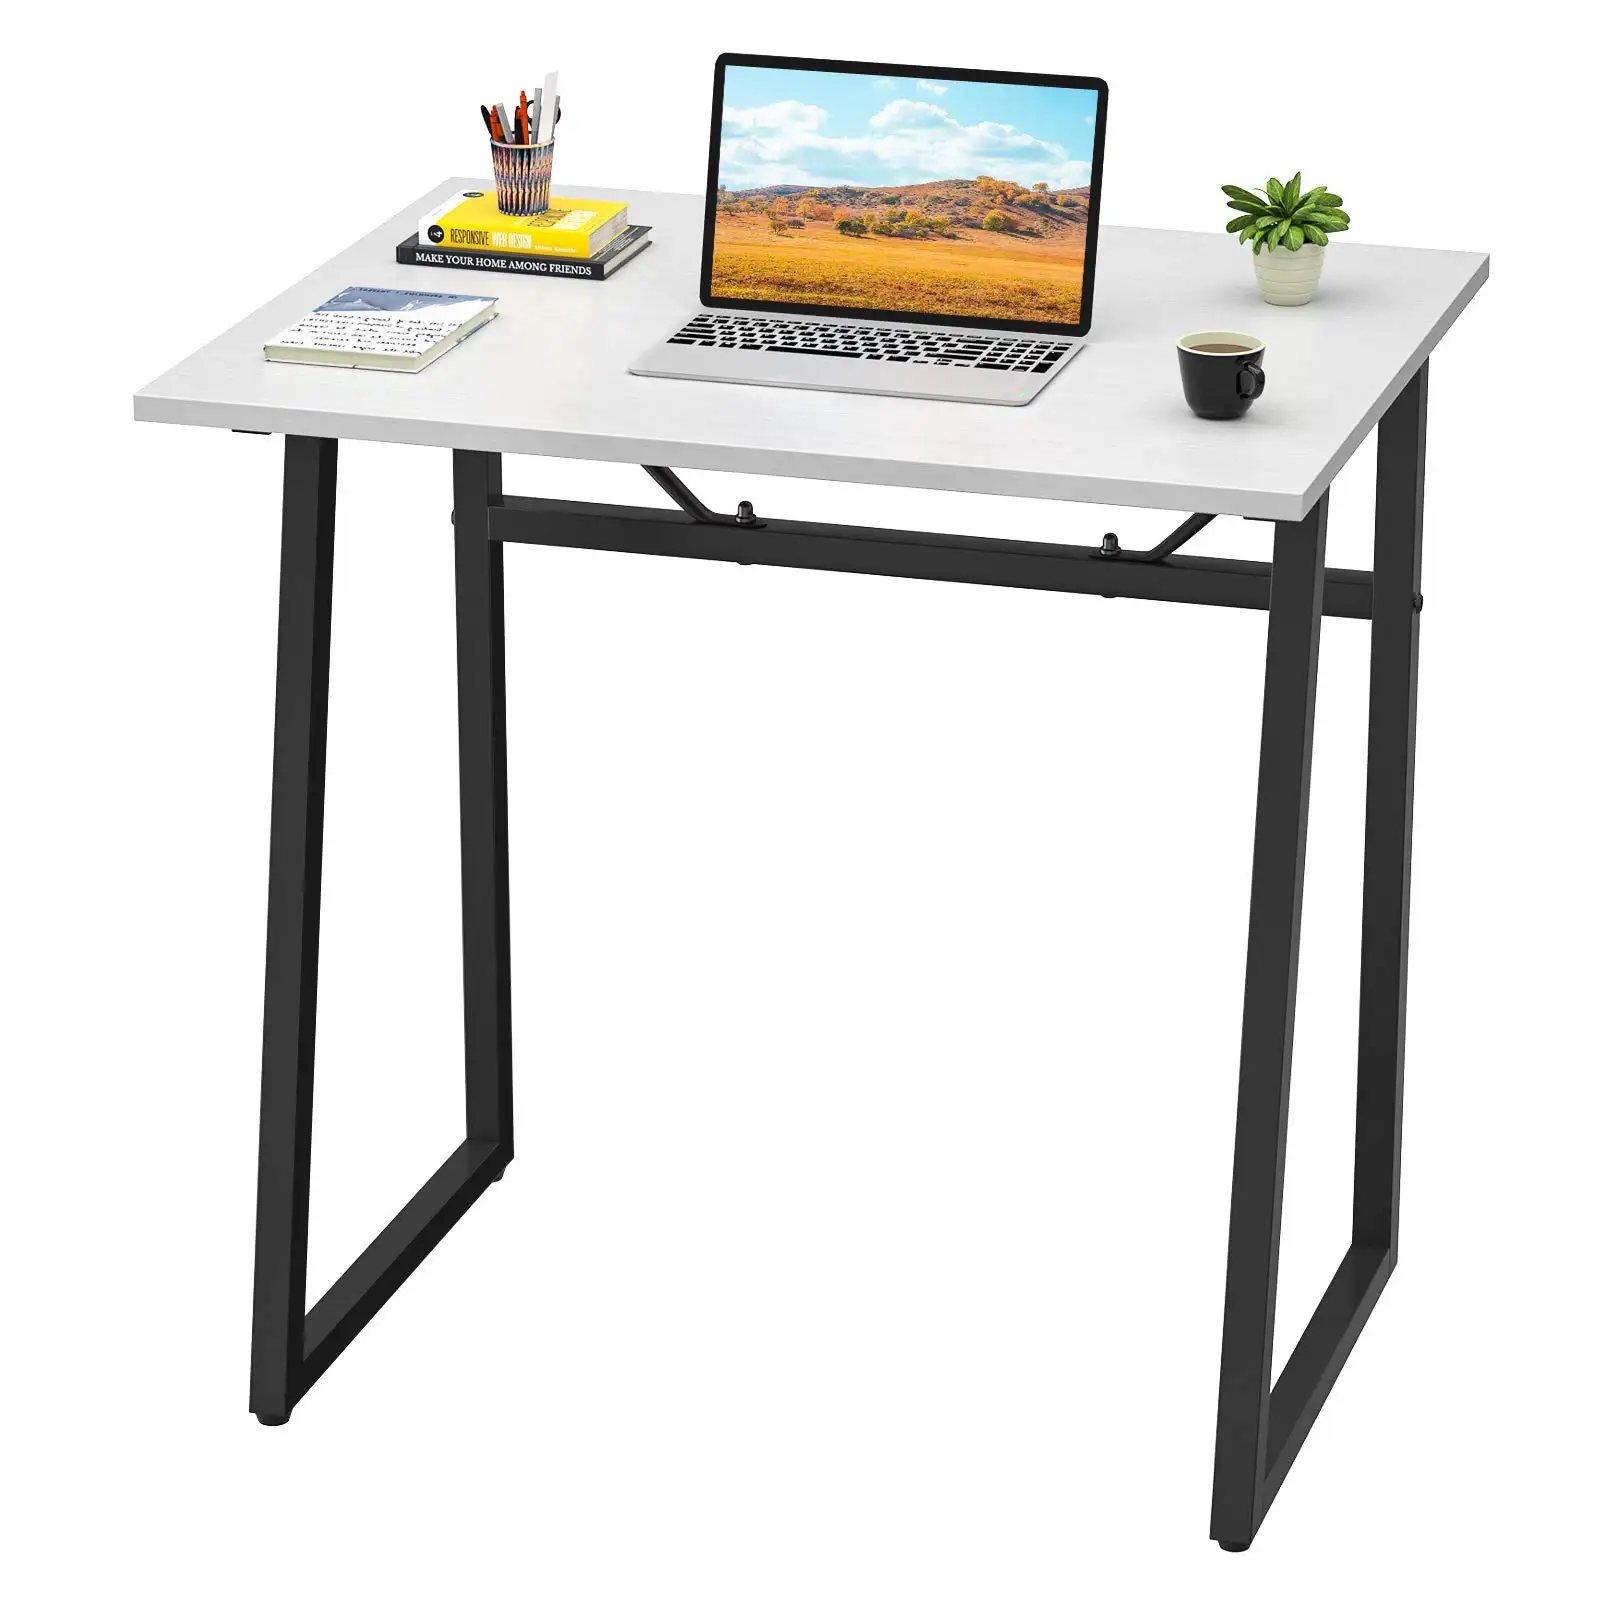 YQ FOREVE scrivania pieghevole senza assemblaggio studio scrivanie per studenti PC Laptop Notebook Writing Computer Table